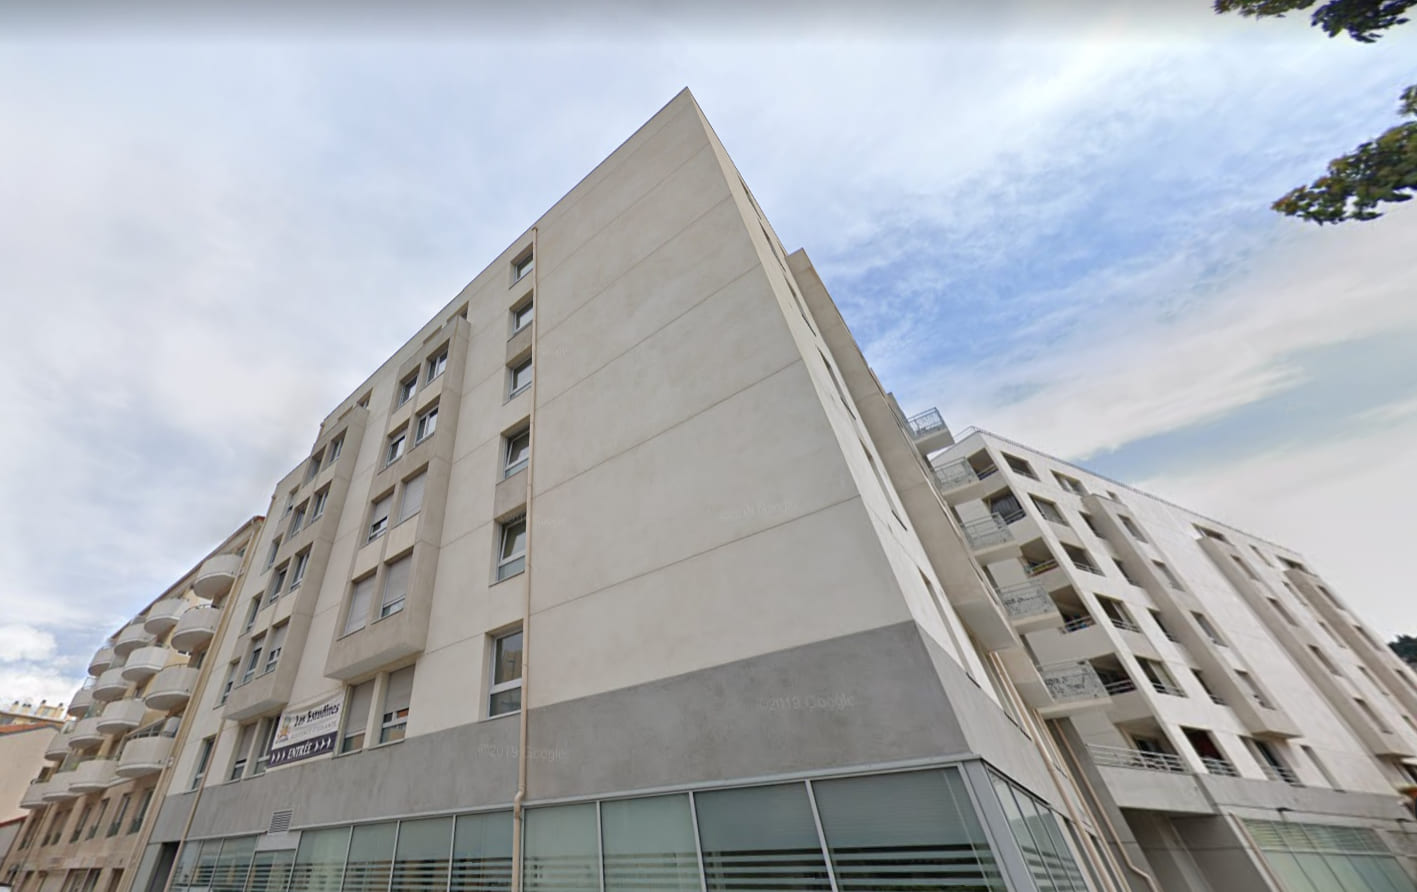 Baie des Anges une résidence étudiante à acheter et exploitée par Les Estudines (Réside études) à Nice